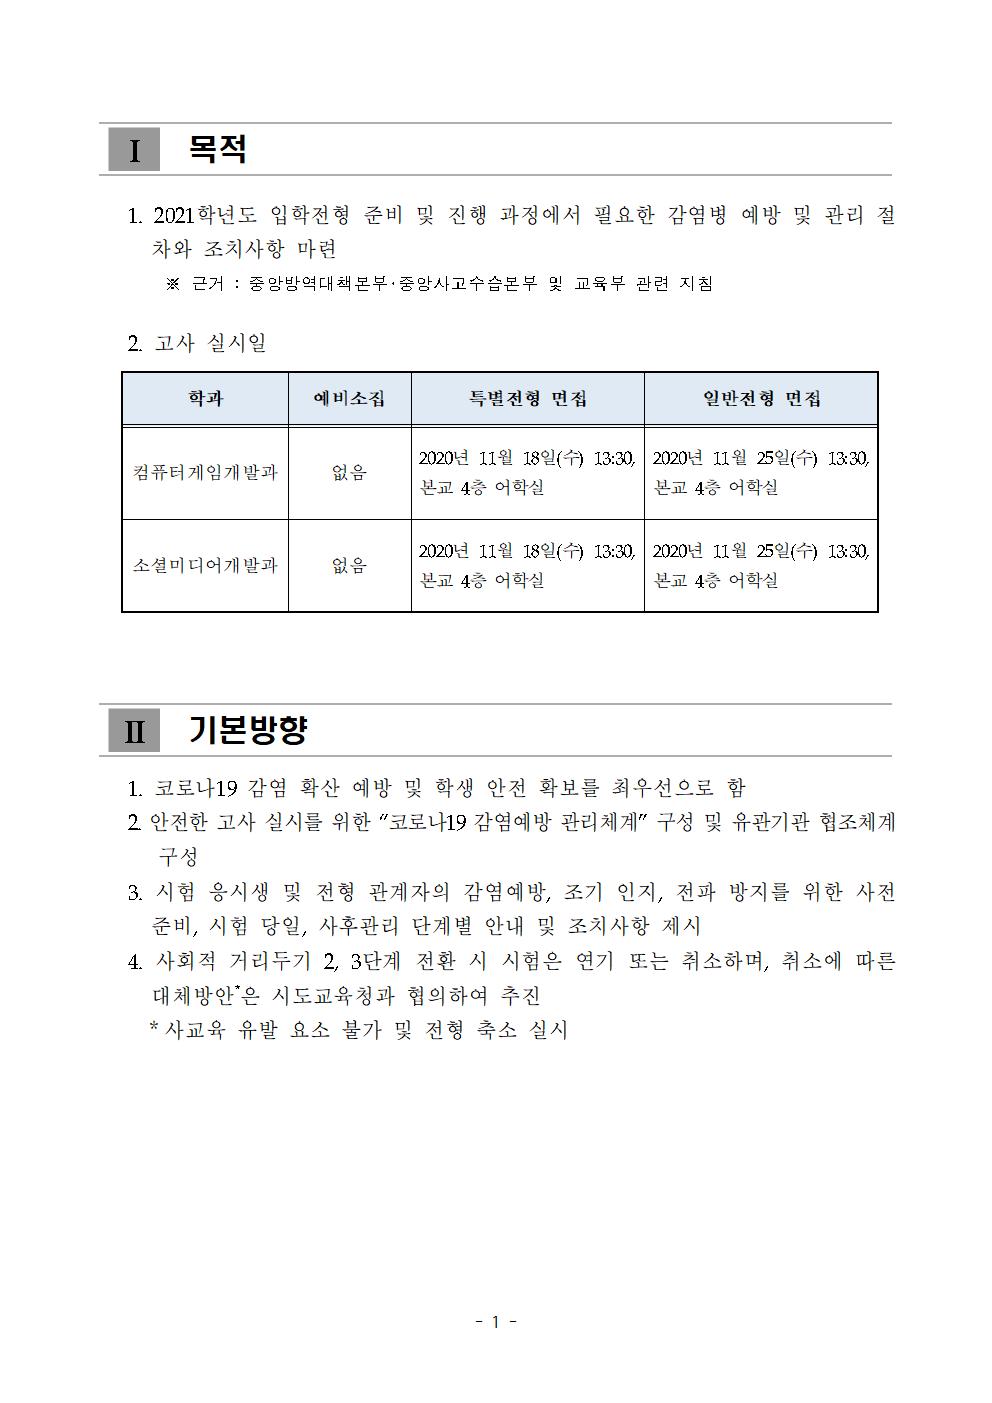 2021학년도 학교별 입학전형 안전관리 계획_한국게임과학고(홈페이지게시)003